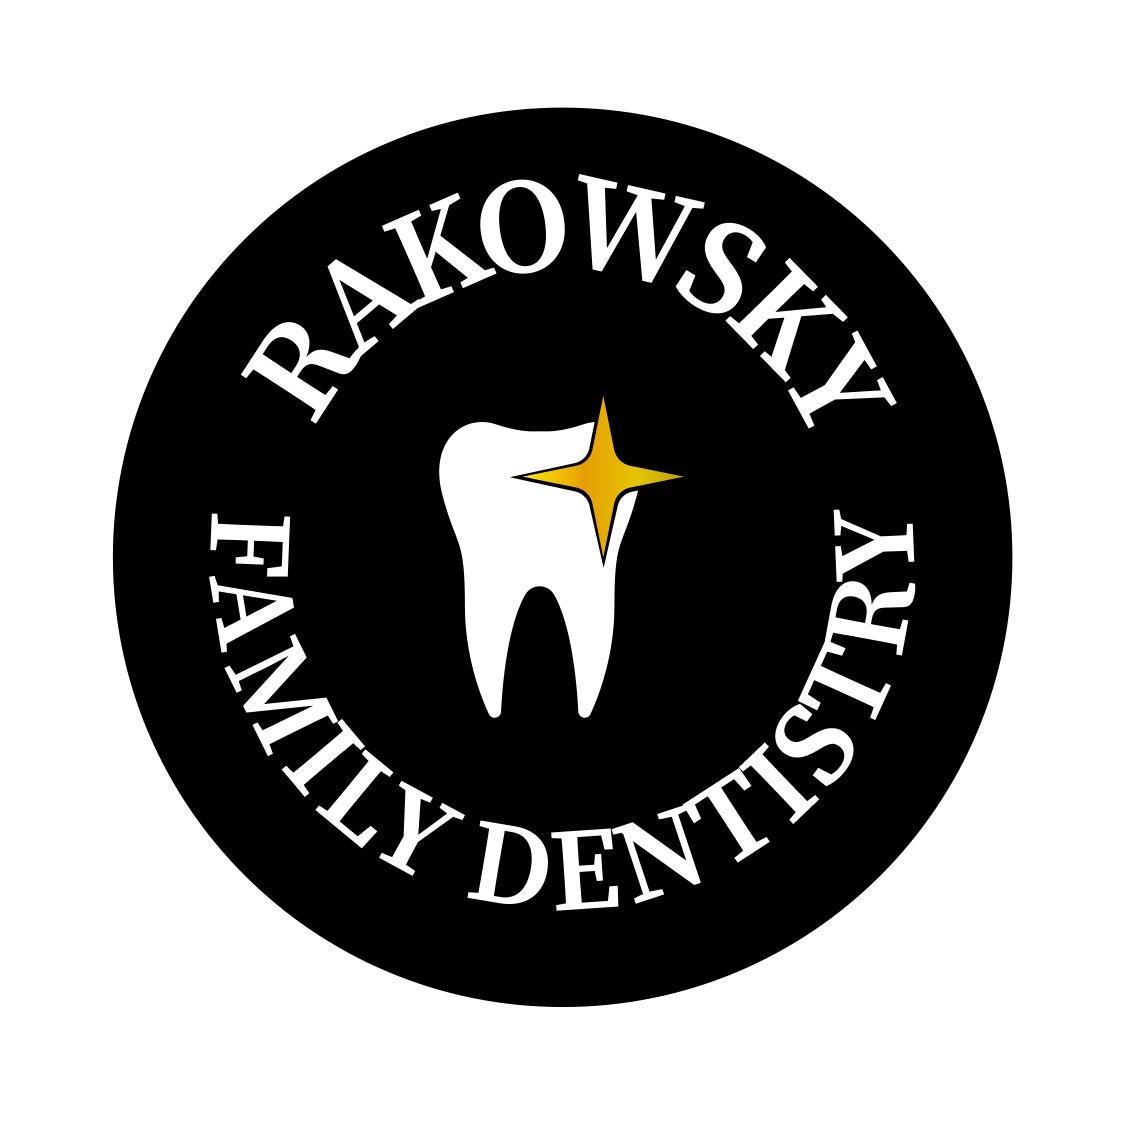 Rakowsky Family Dentistry 7601 Easton Rd, Ottsville Pennsylvania 18942